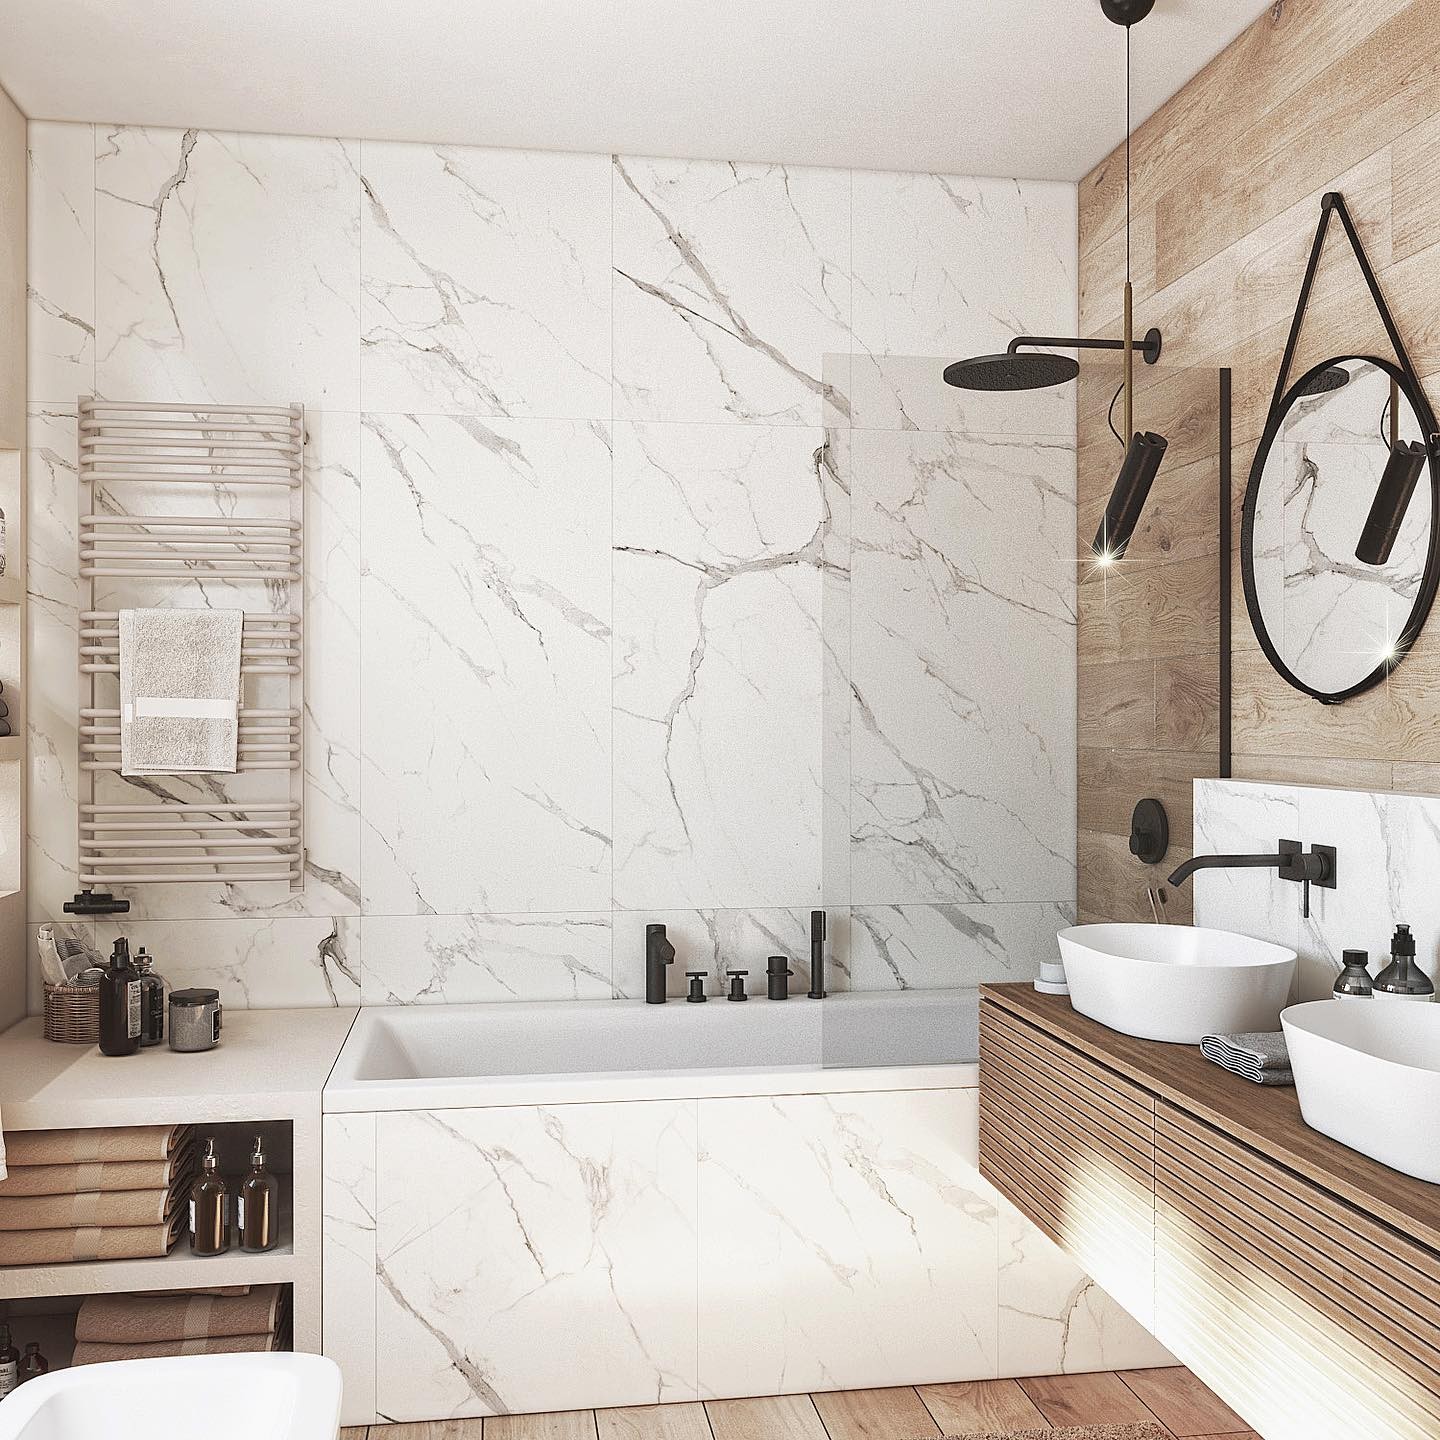 15 of the Best Bathroom Design Ideas-c2b23428